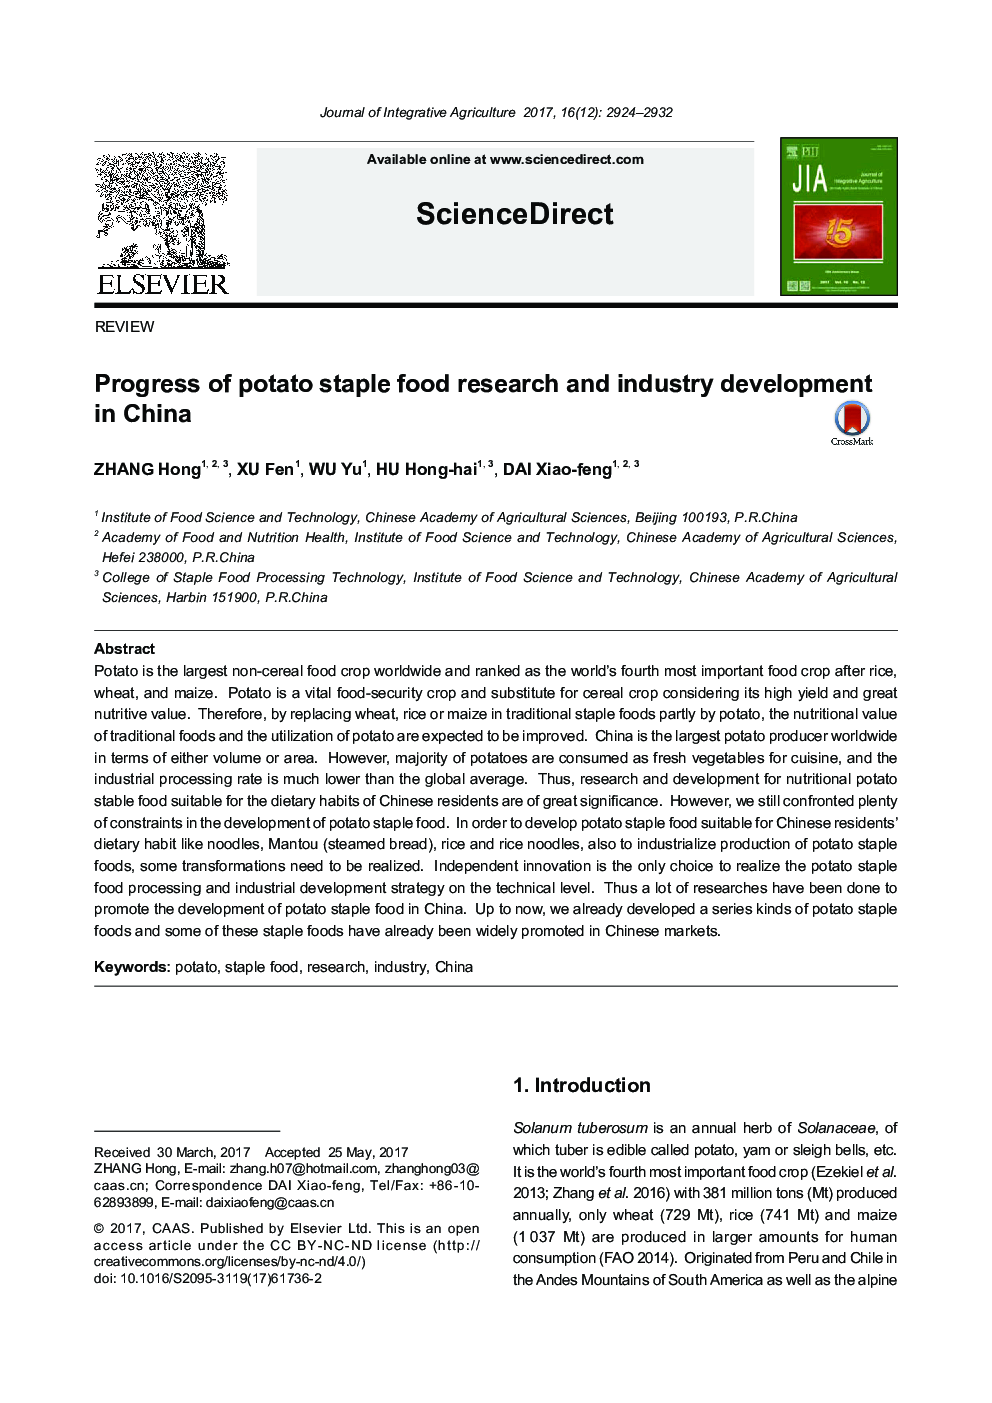 پیشرفت تحقیقات غذایی مواد غذایی سیب زمینی و توسعه صنعت در چین 